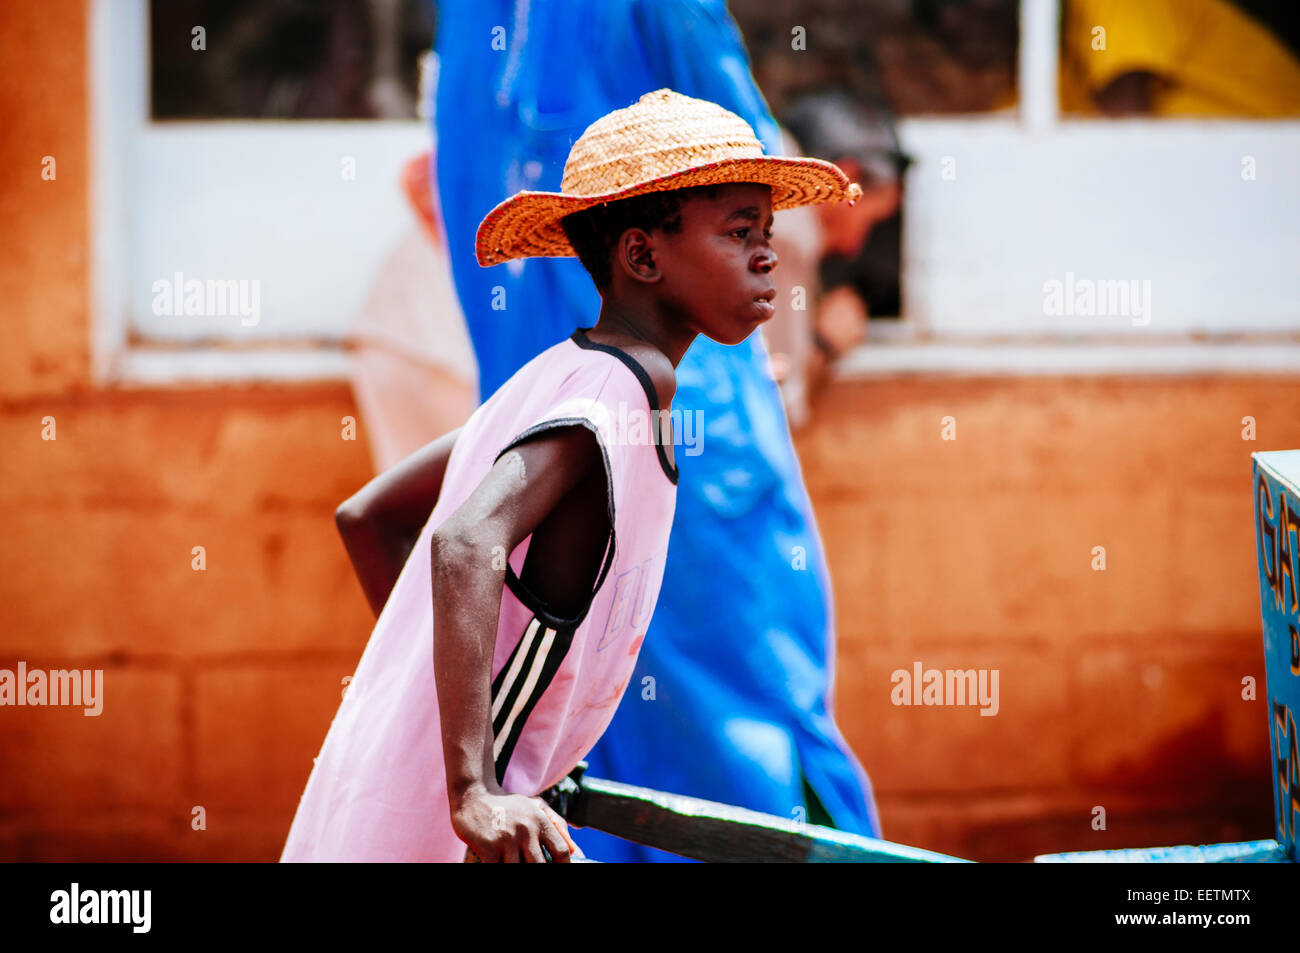 Vendeur de rue, garçon, Ouahigouya, Burkina Faso Banque D'Images